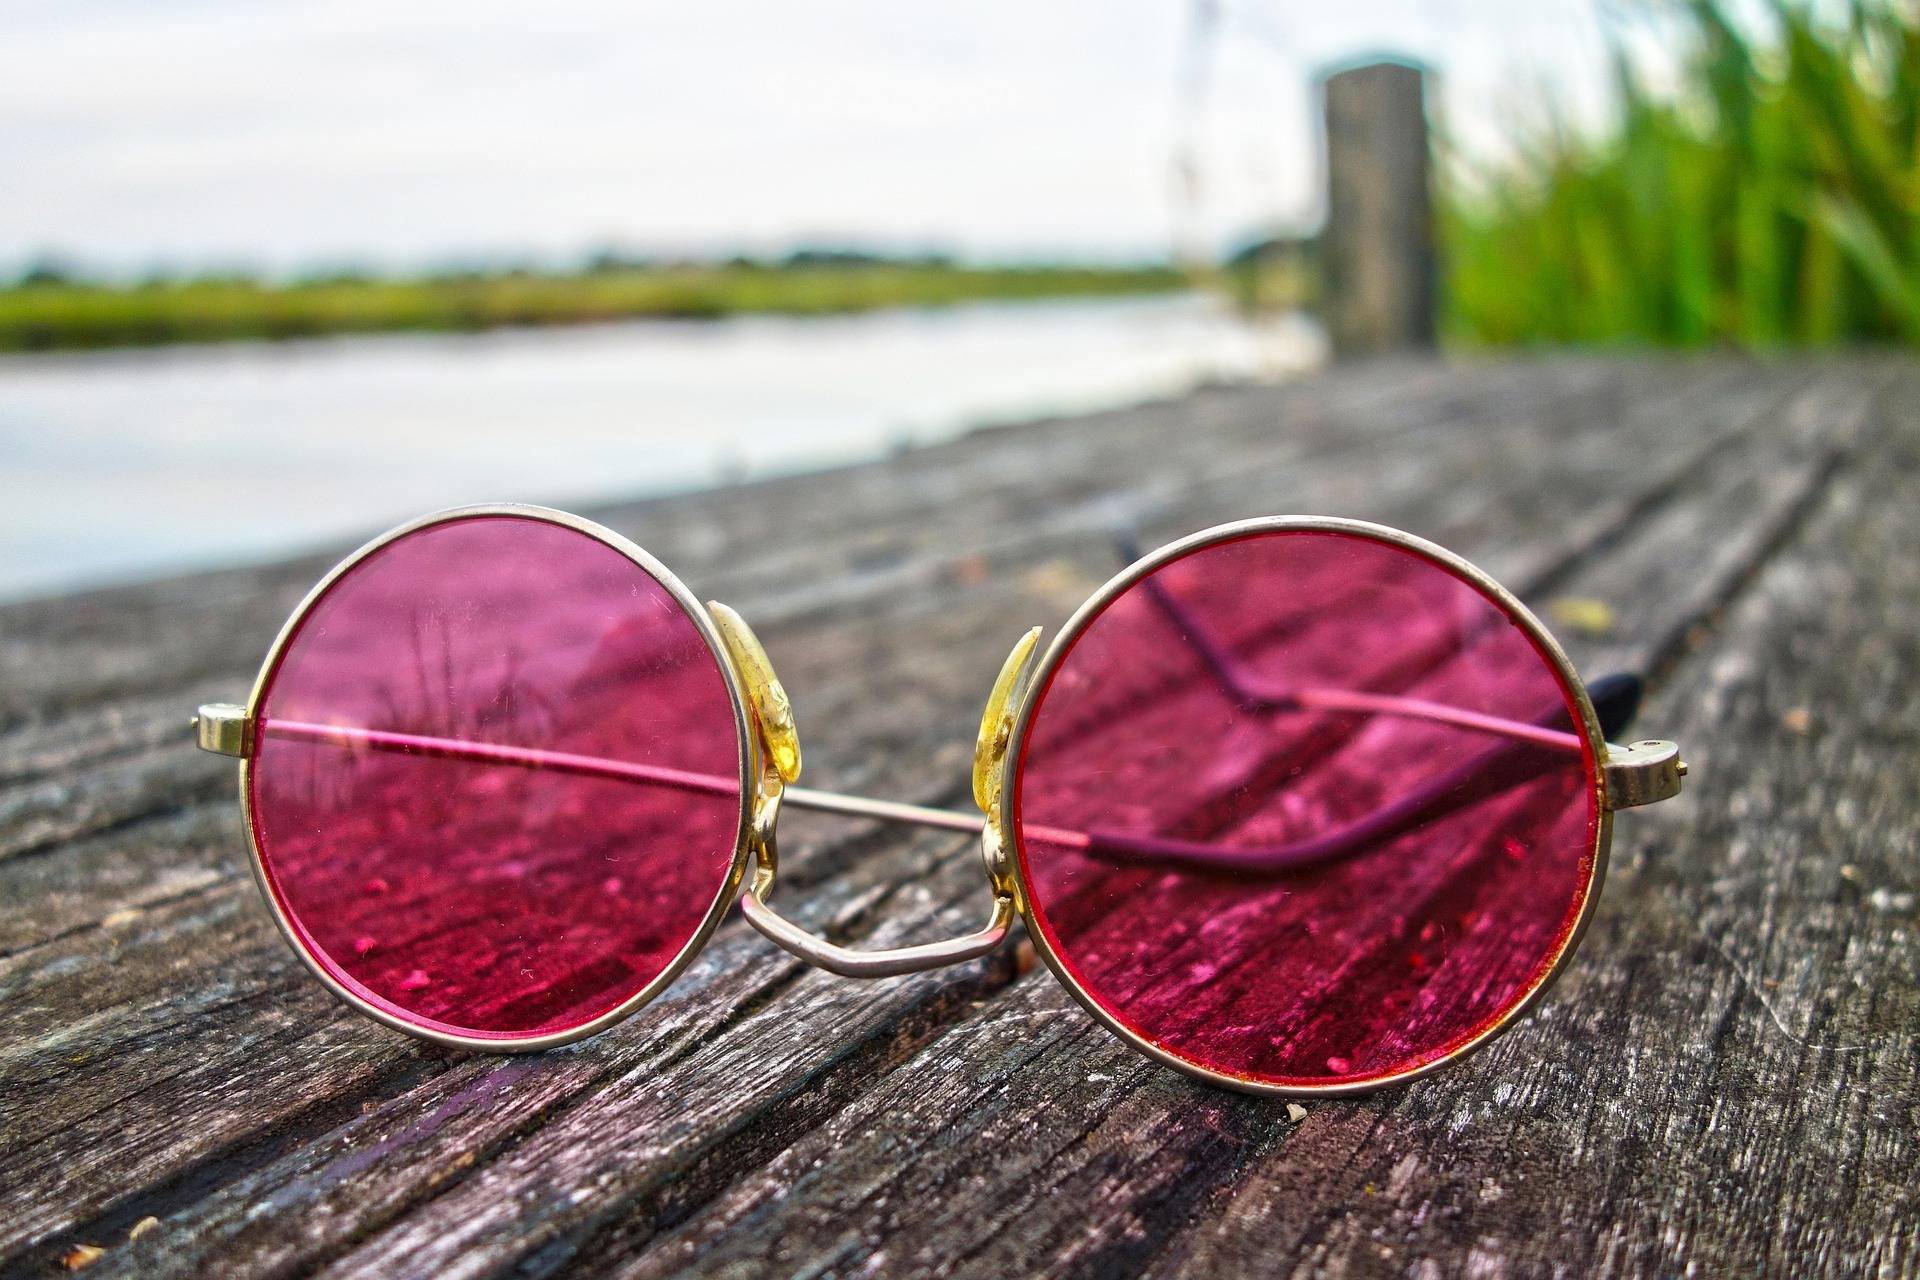  Wer die Wahl hat: Sonnenbrillen gibt es in unterschiedlichsten Farben und Formen. 